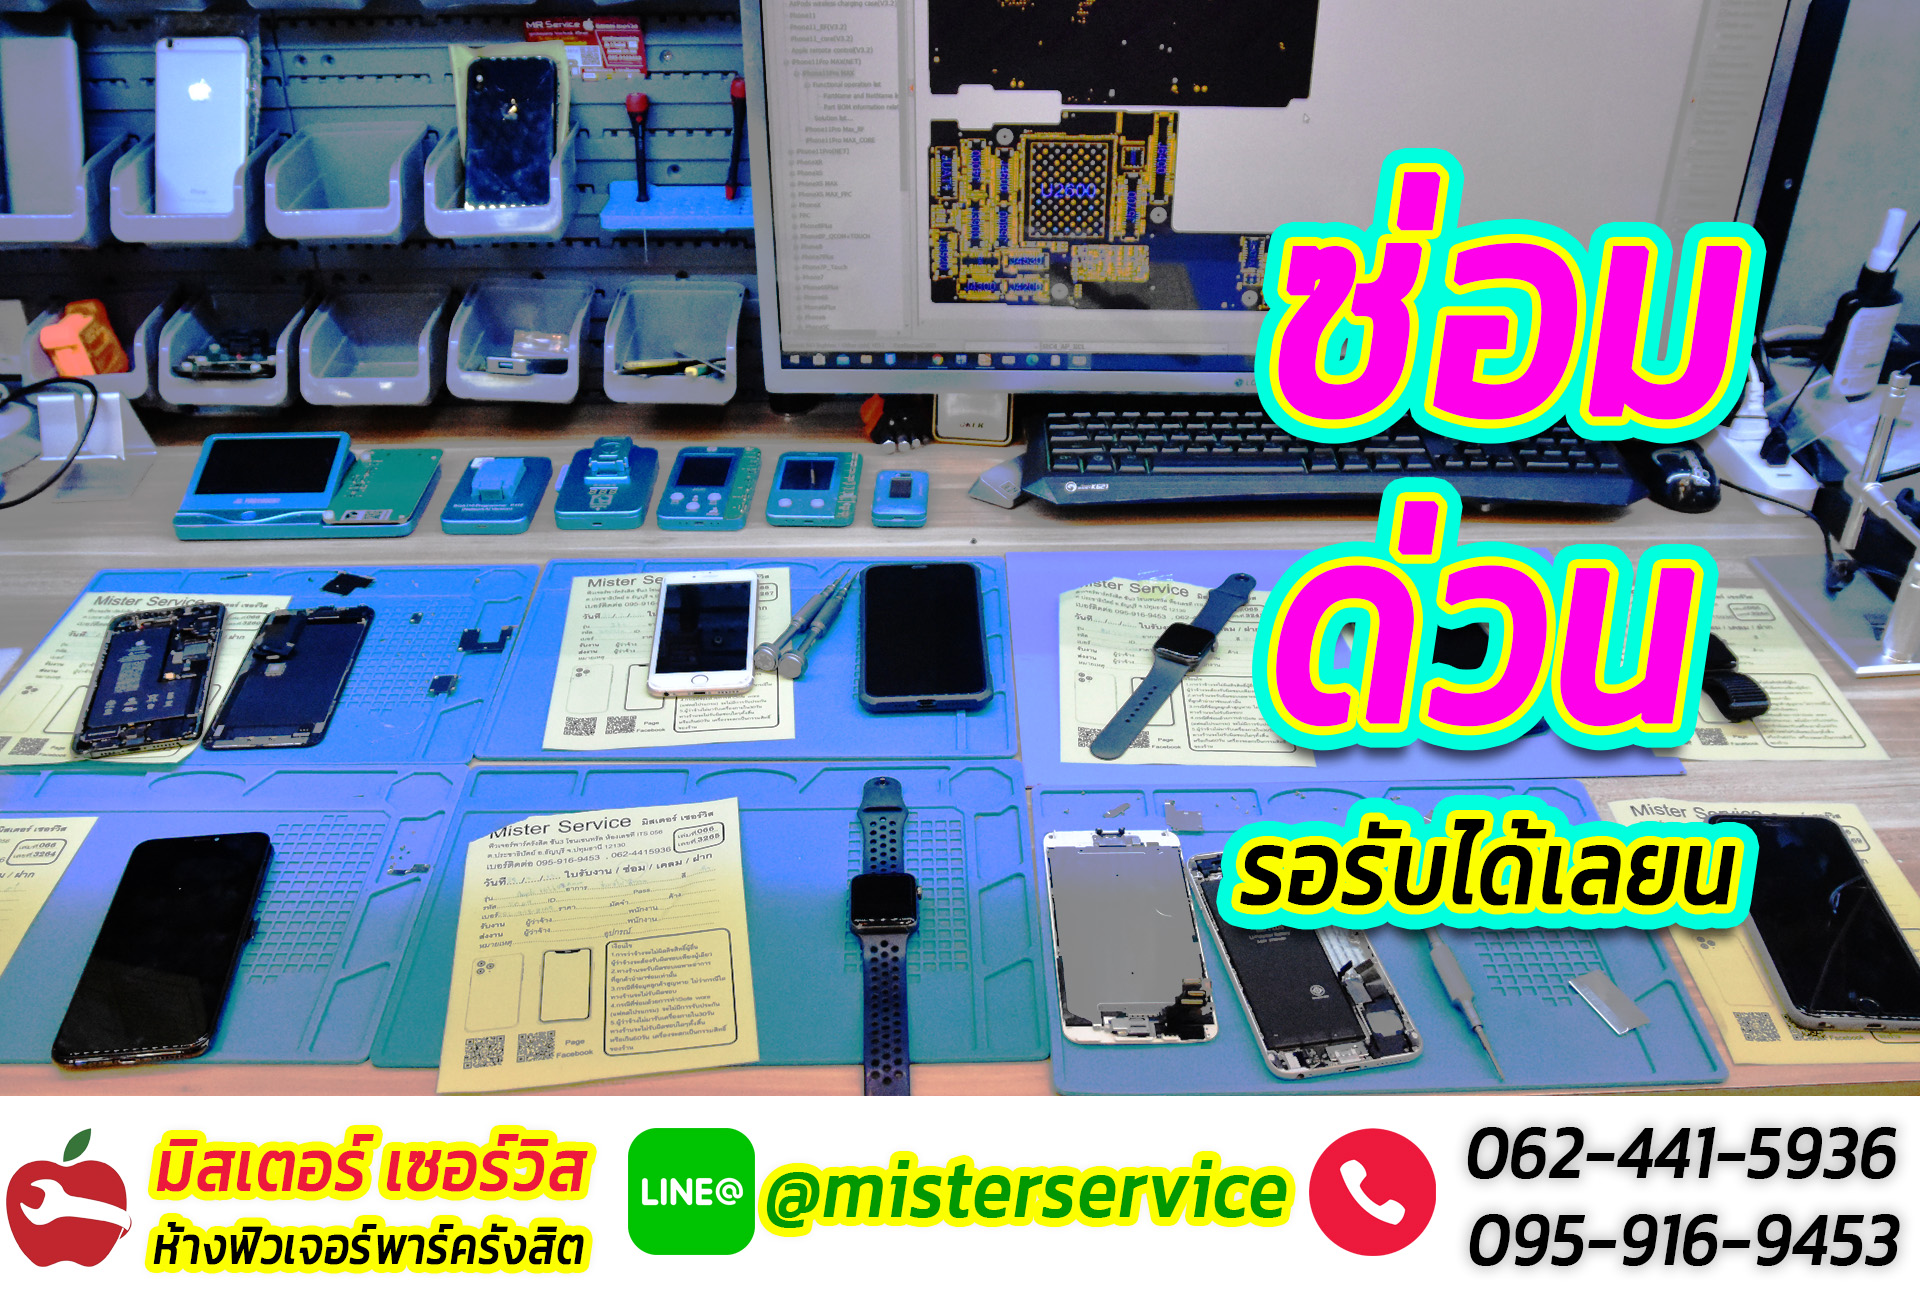 ซ่อมไอโฟน เมืองทองธานี ปากเกร็ด นนทบุรี